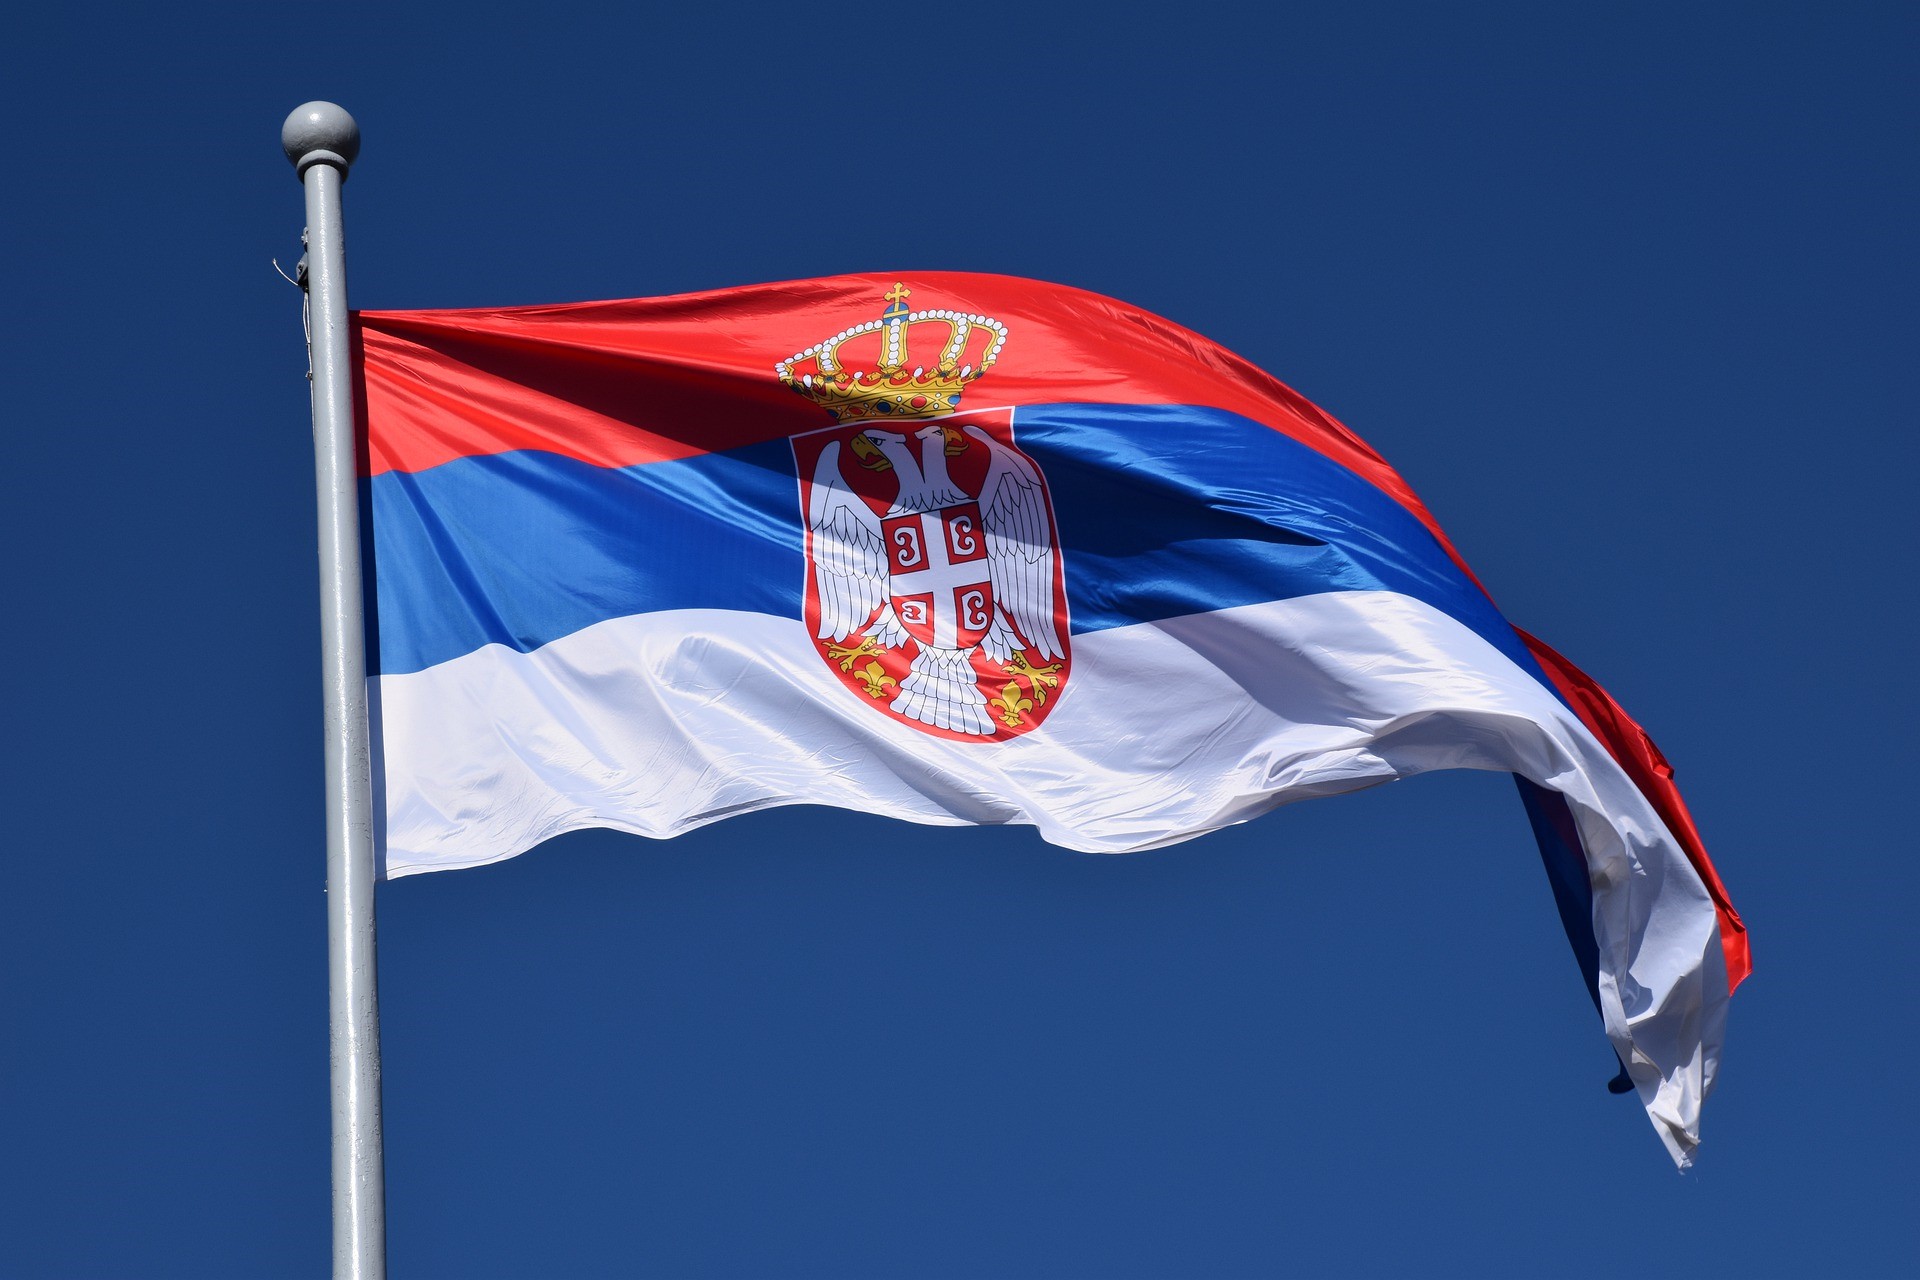 Expat Serbia BELEX15 UCITS ETF (ESNB ETF) är en börshandlad fond som följer utvecklingen av BELEX15 Index på Belgradbörsen, med hjälp av den direkta fysiska replikeringsmetoden. Det är noterat på den bulgariska börsen, på Frankfurtbörsen (XETRA) och på Ljubljanabörsen. Det är lämpligt för bulgariska och utländska investerare som vill ha en likvid och diversifierad exponering mot den serbiska marknaden och regionen som helhet.